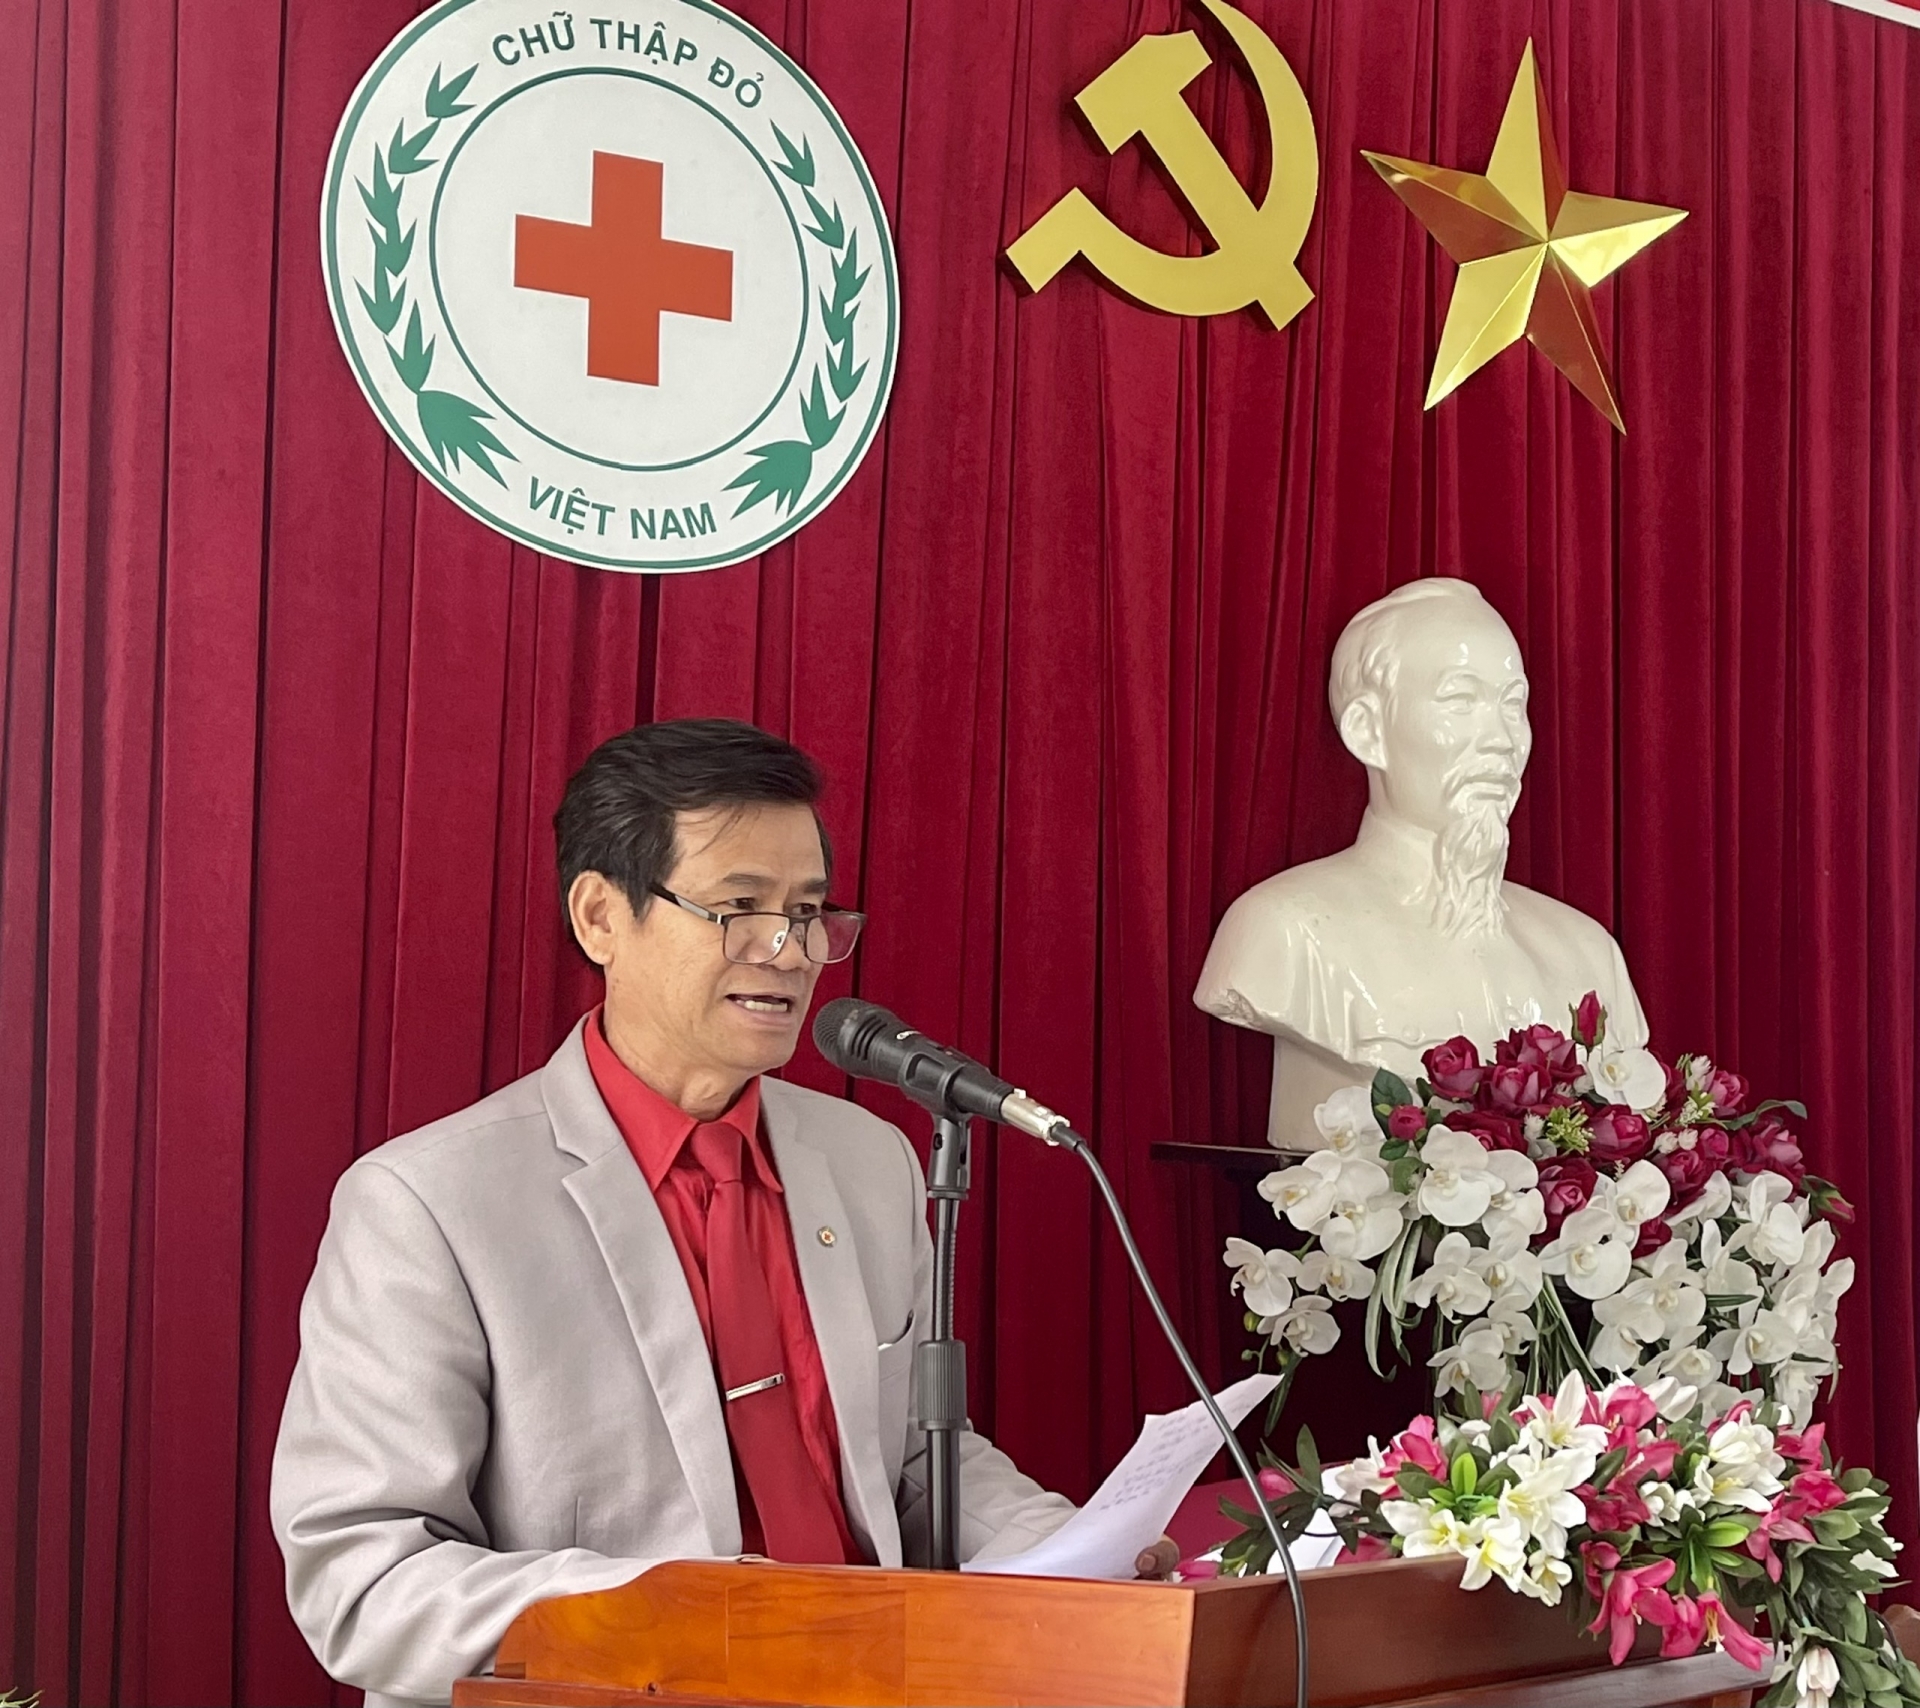 Ông Nguyễn Quang Minh -Chủ tịch Hội CTĐ Lâm Đồng phát biểu khai mạc hội nghị